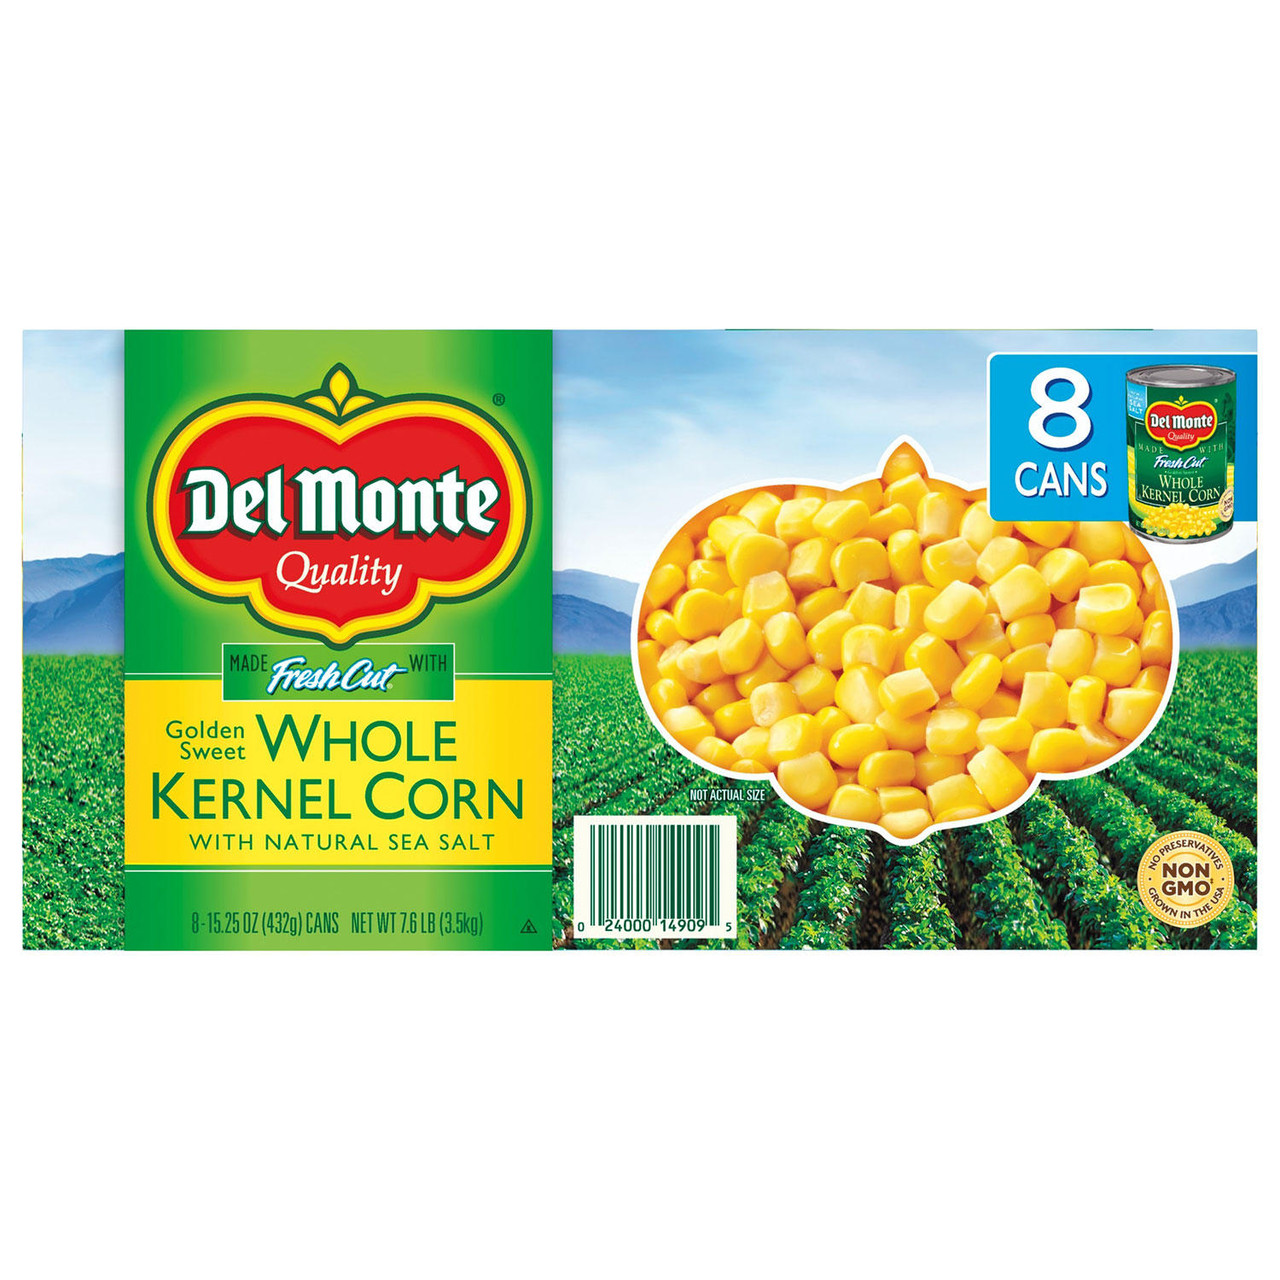 Del Monte Golden Sweet Whole Kernel Corn (15.25 oz., 8 pk.) - *In Store